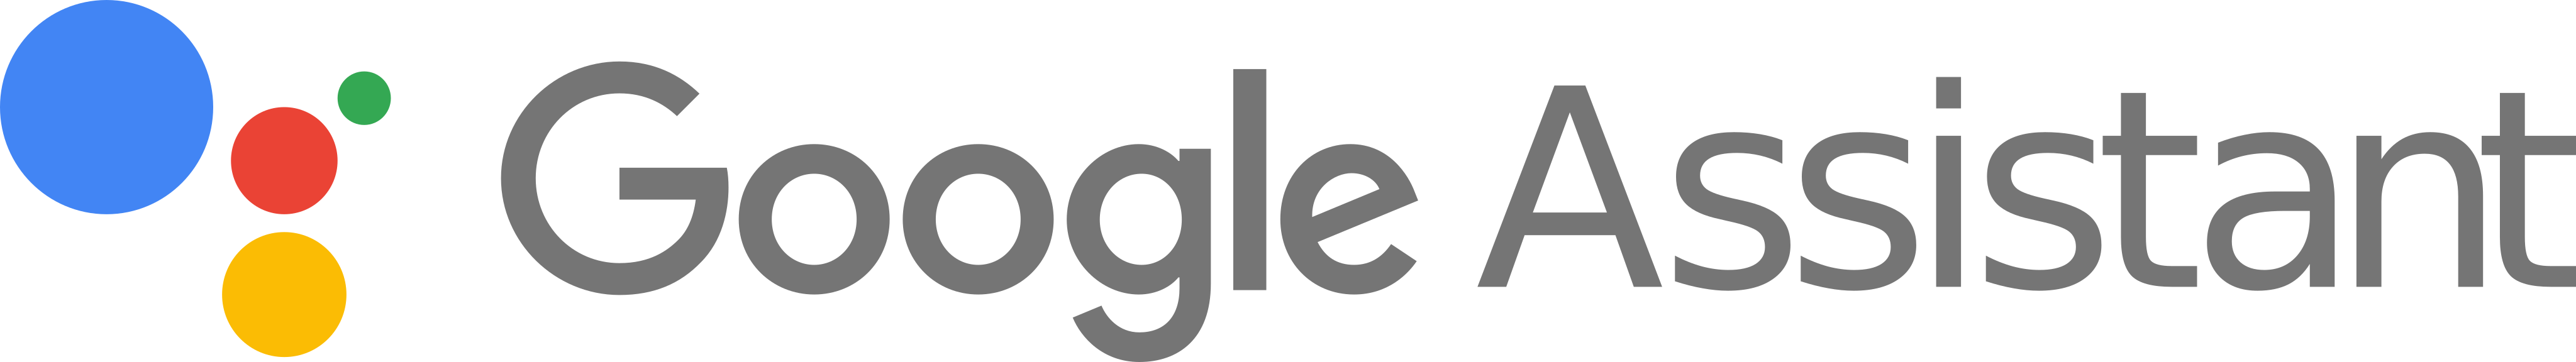 google-assistant-logo.png (123 KB)